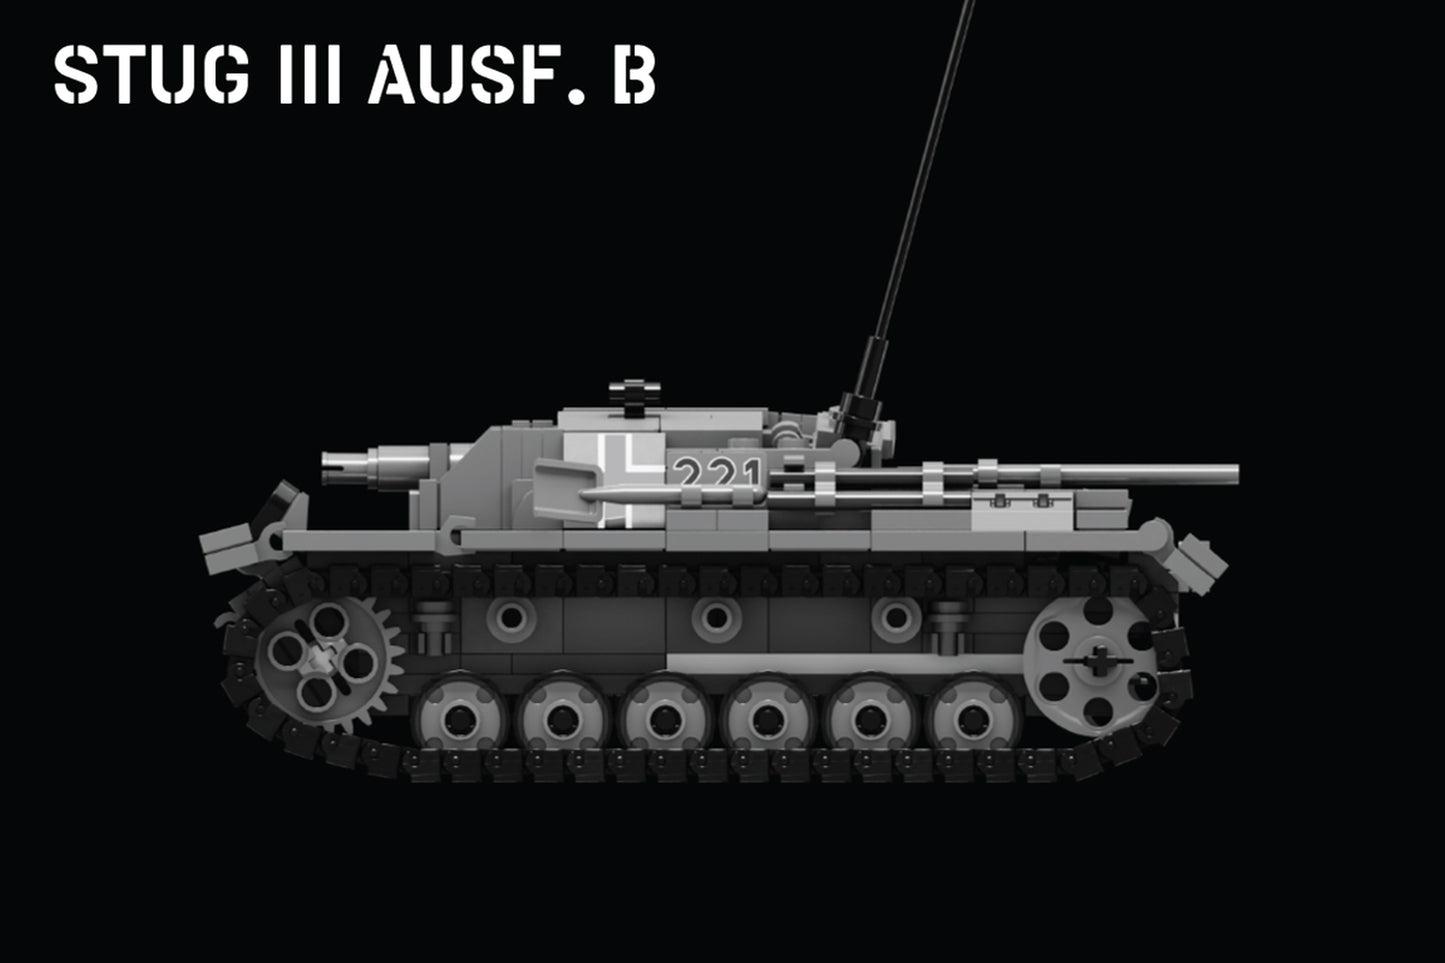 StuG III Ausf. B - German Assault Gun